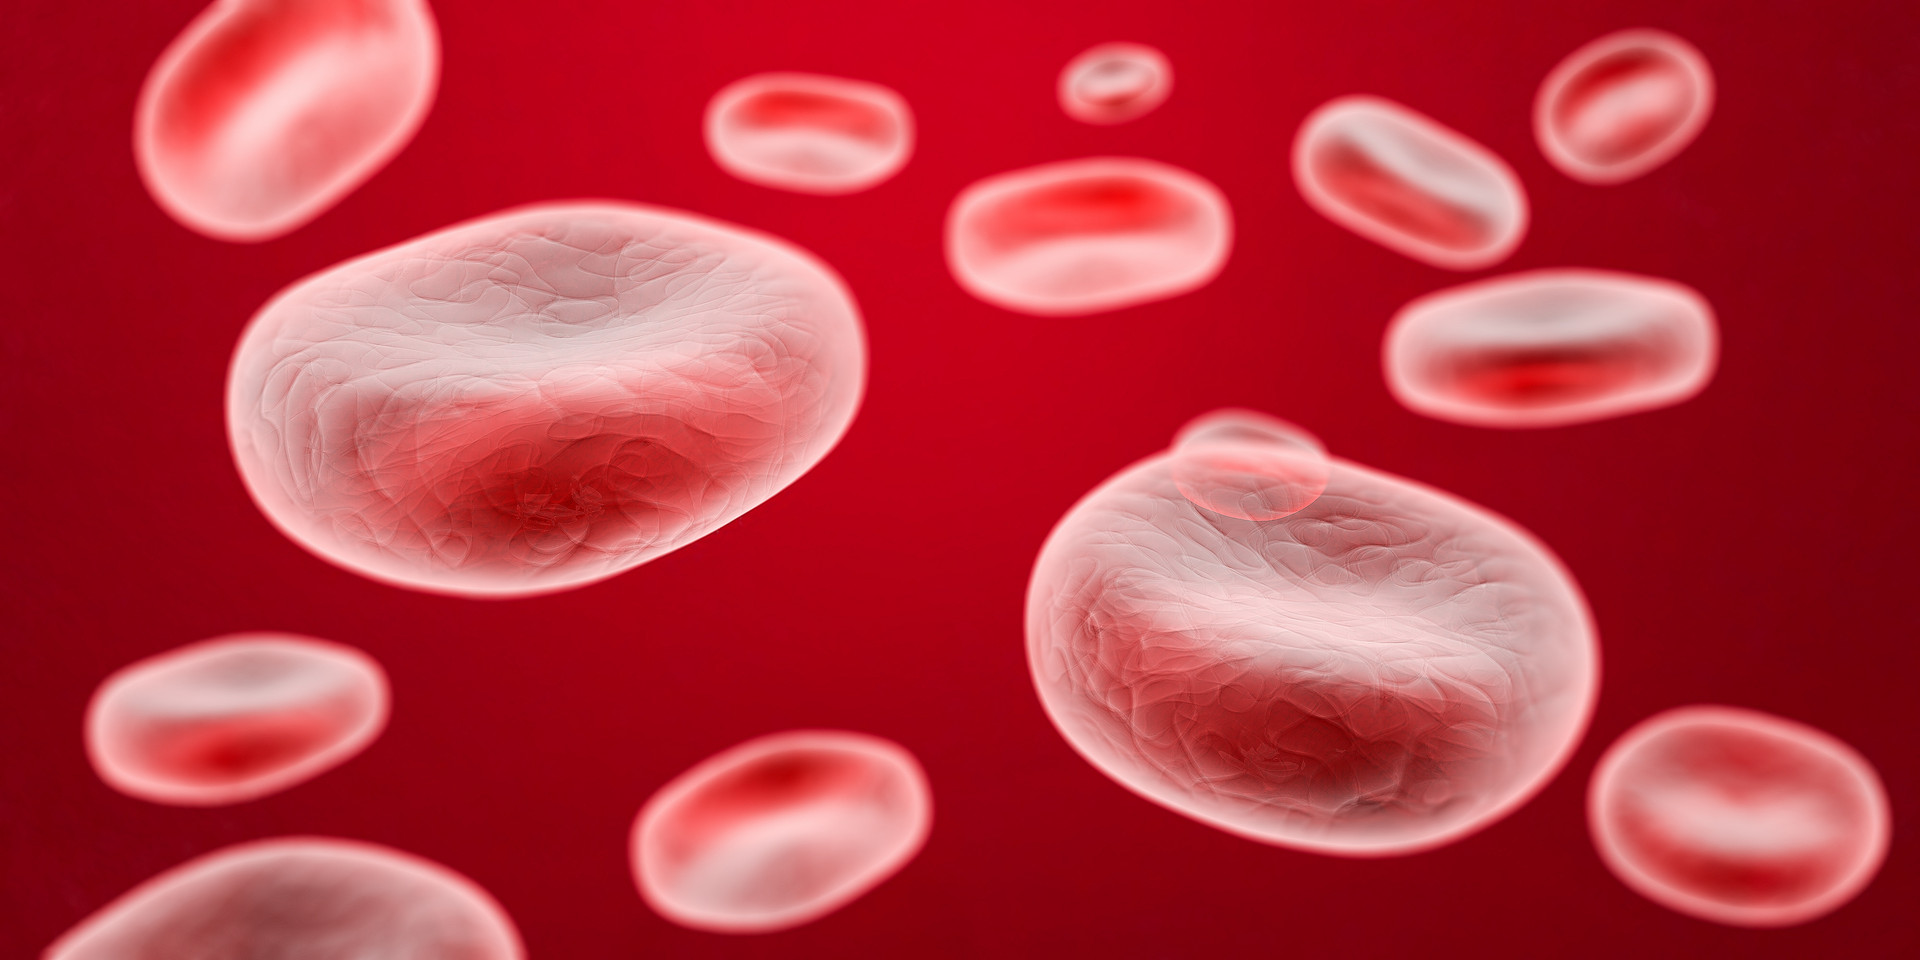 什么是红细胞聚集，不同程度的聚集会给身体造成哪些影响？ - 惠斯安普行业资讯 - 体检设备_惠斯安普-健康风险评估系统